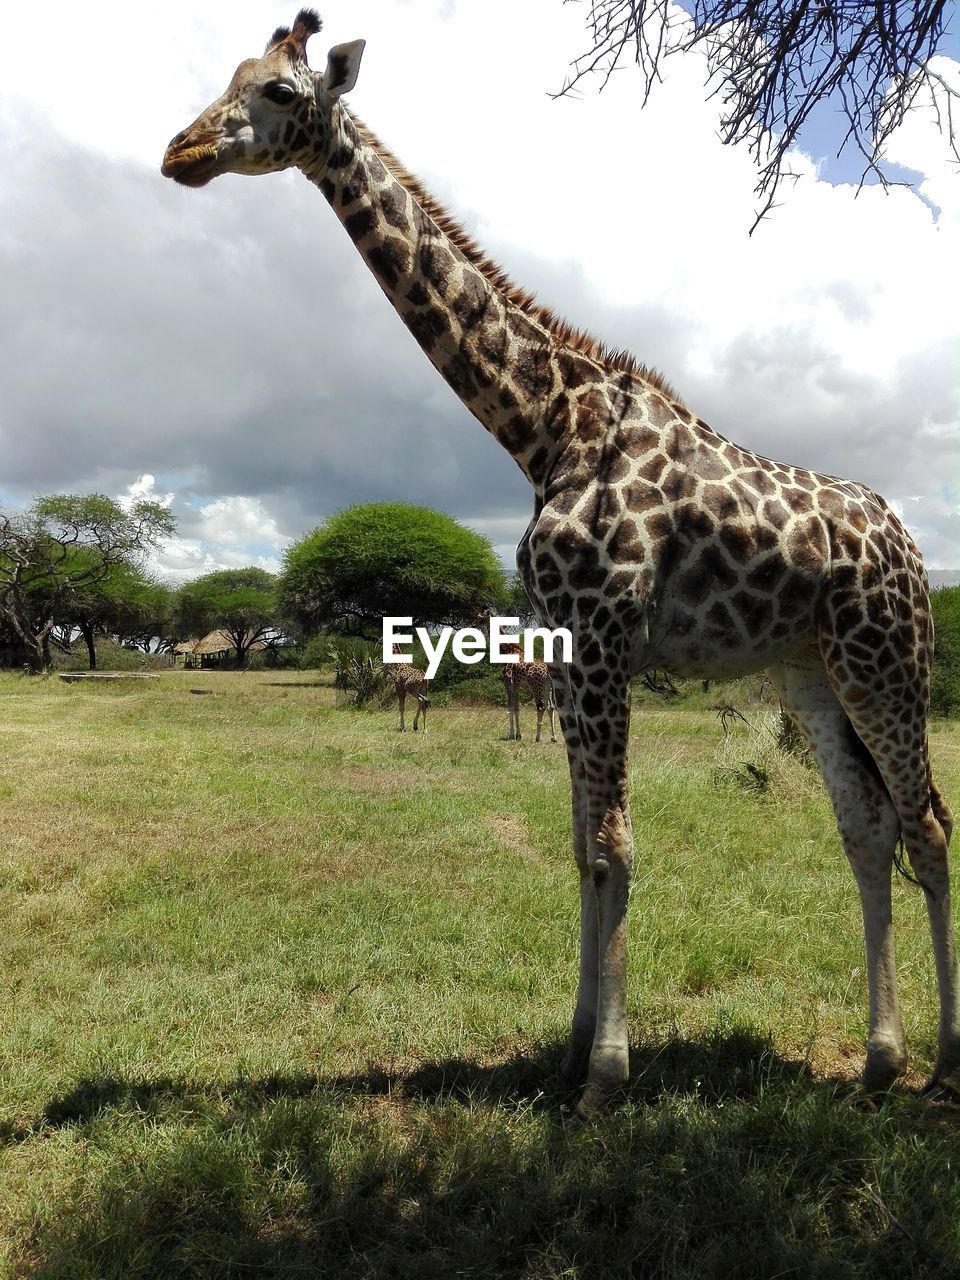 Your highness. a giraffe in a kenyan reserve